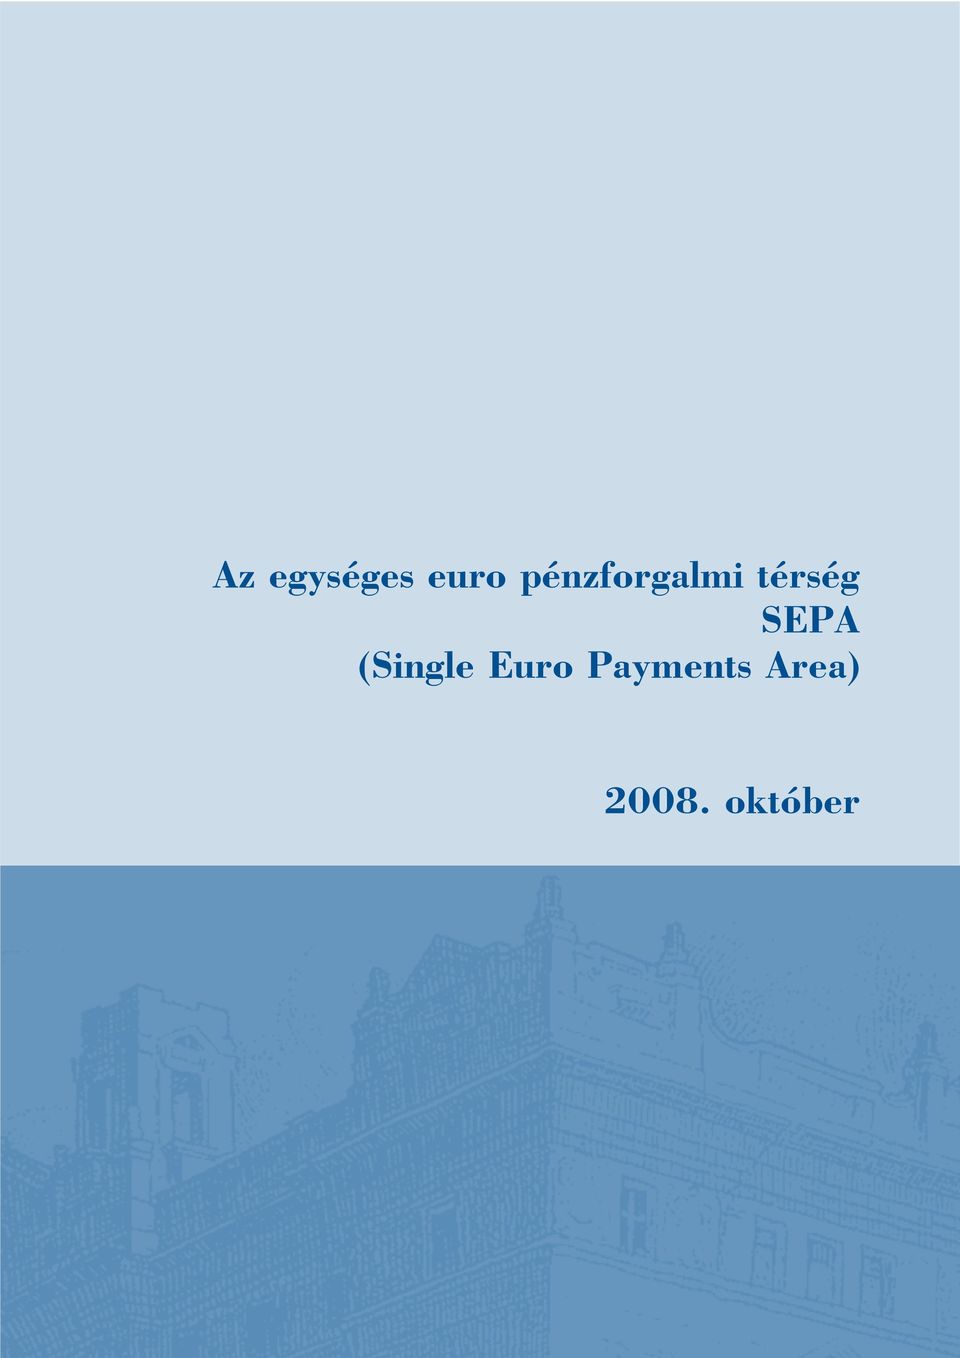 SEPA (Single Euro